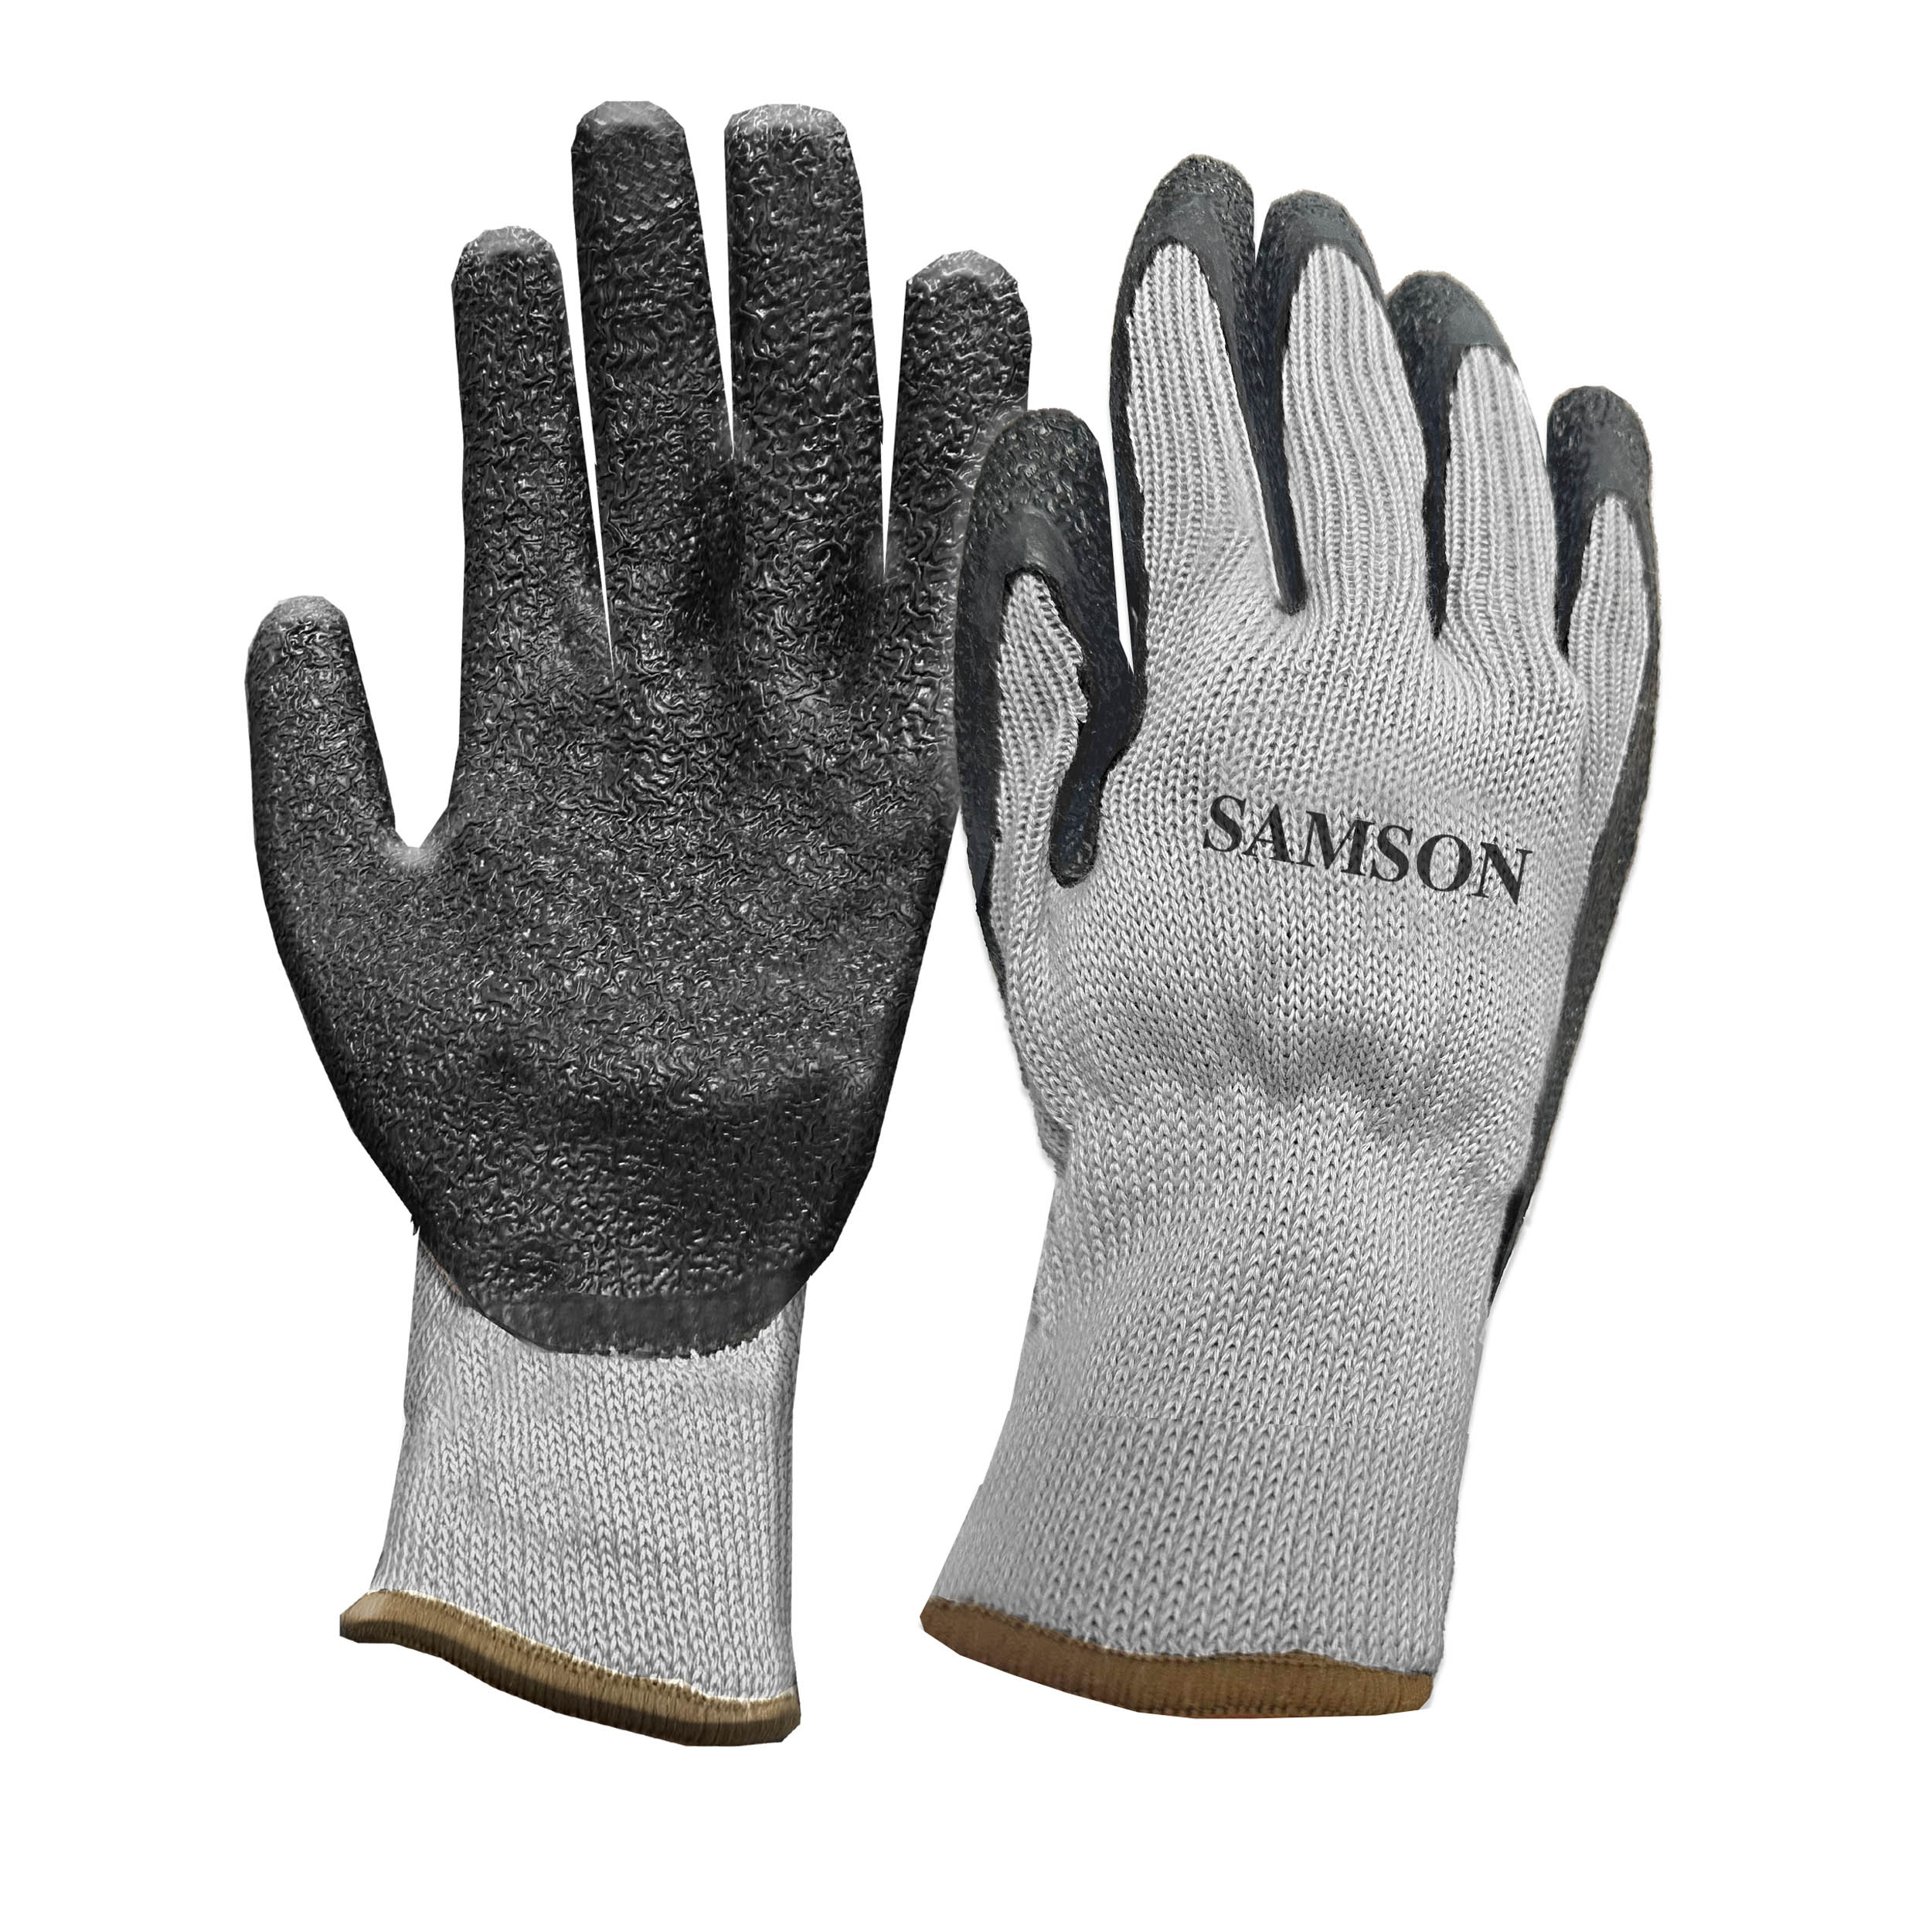 Samson Rubber Coated Gloves, 1 Pair